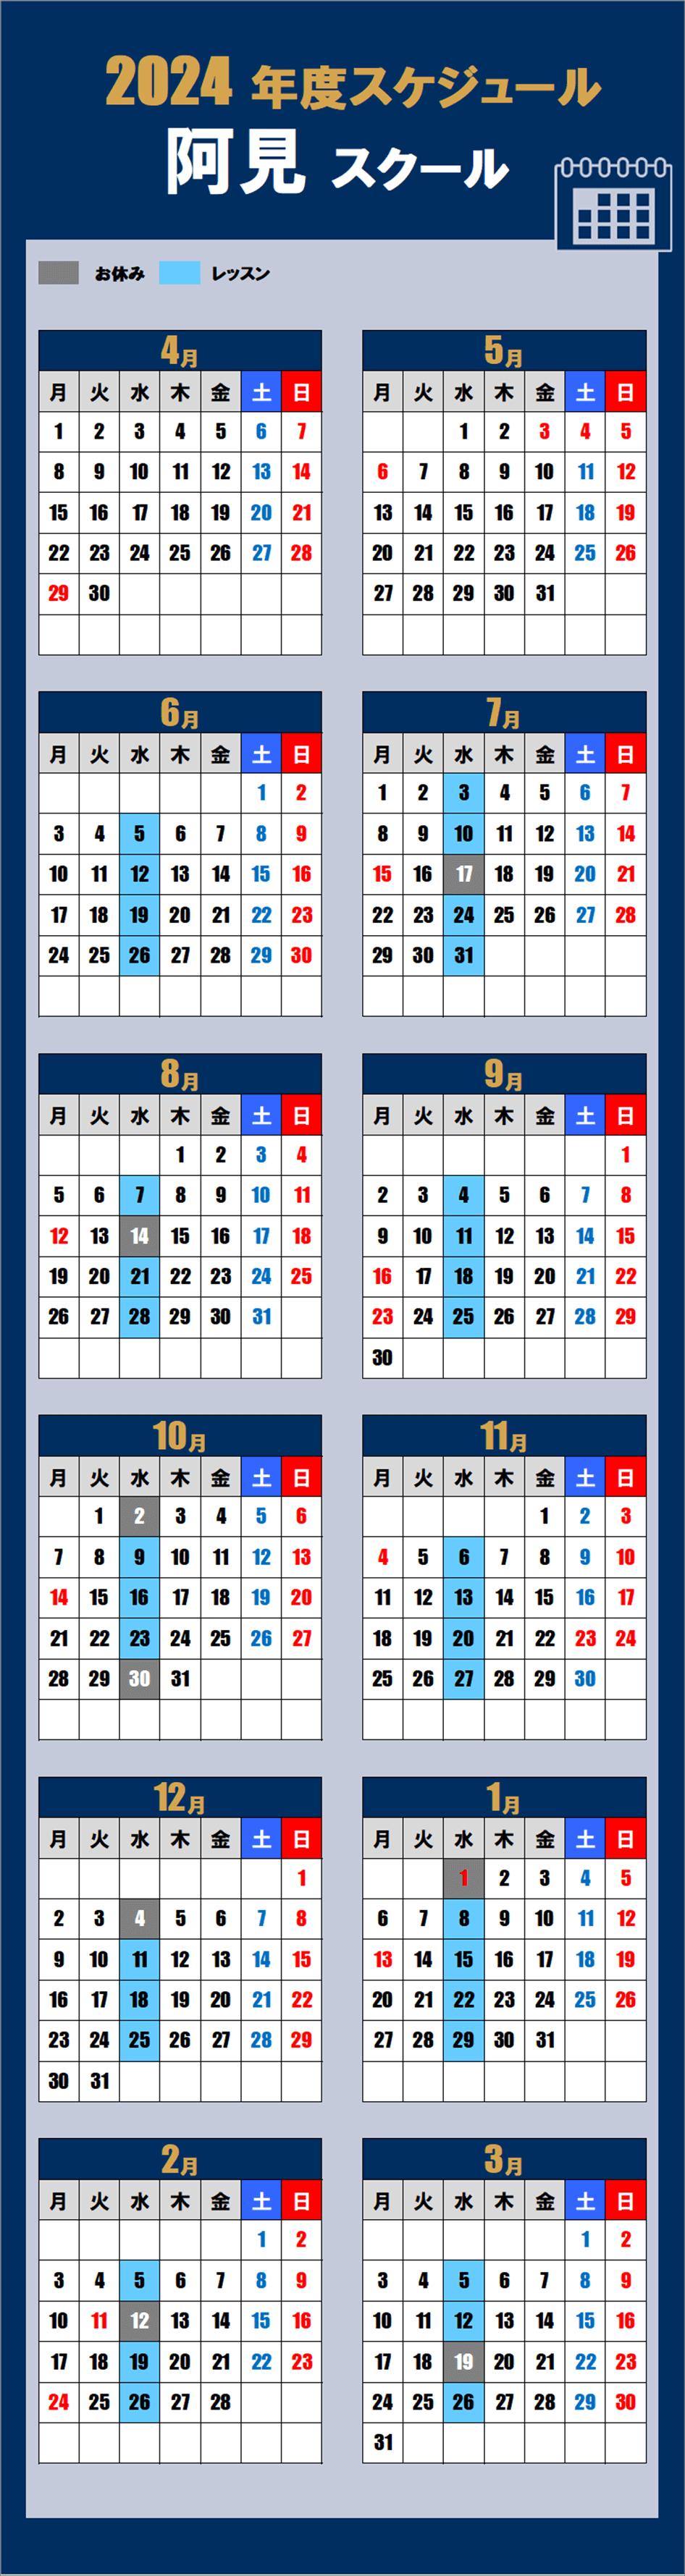 2024阿見スクールカレンダー